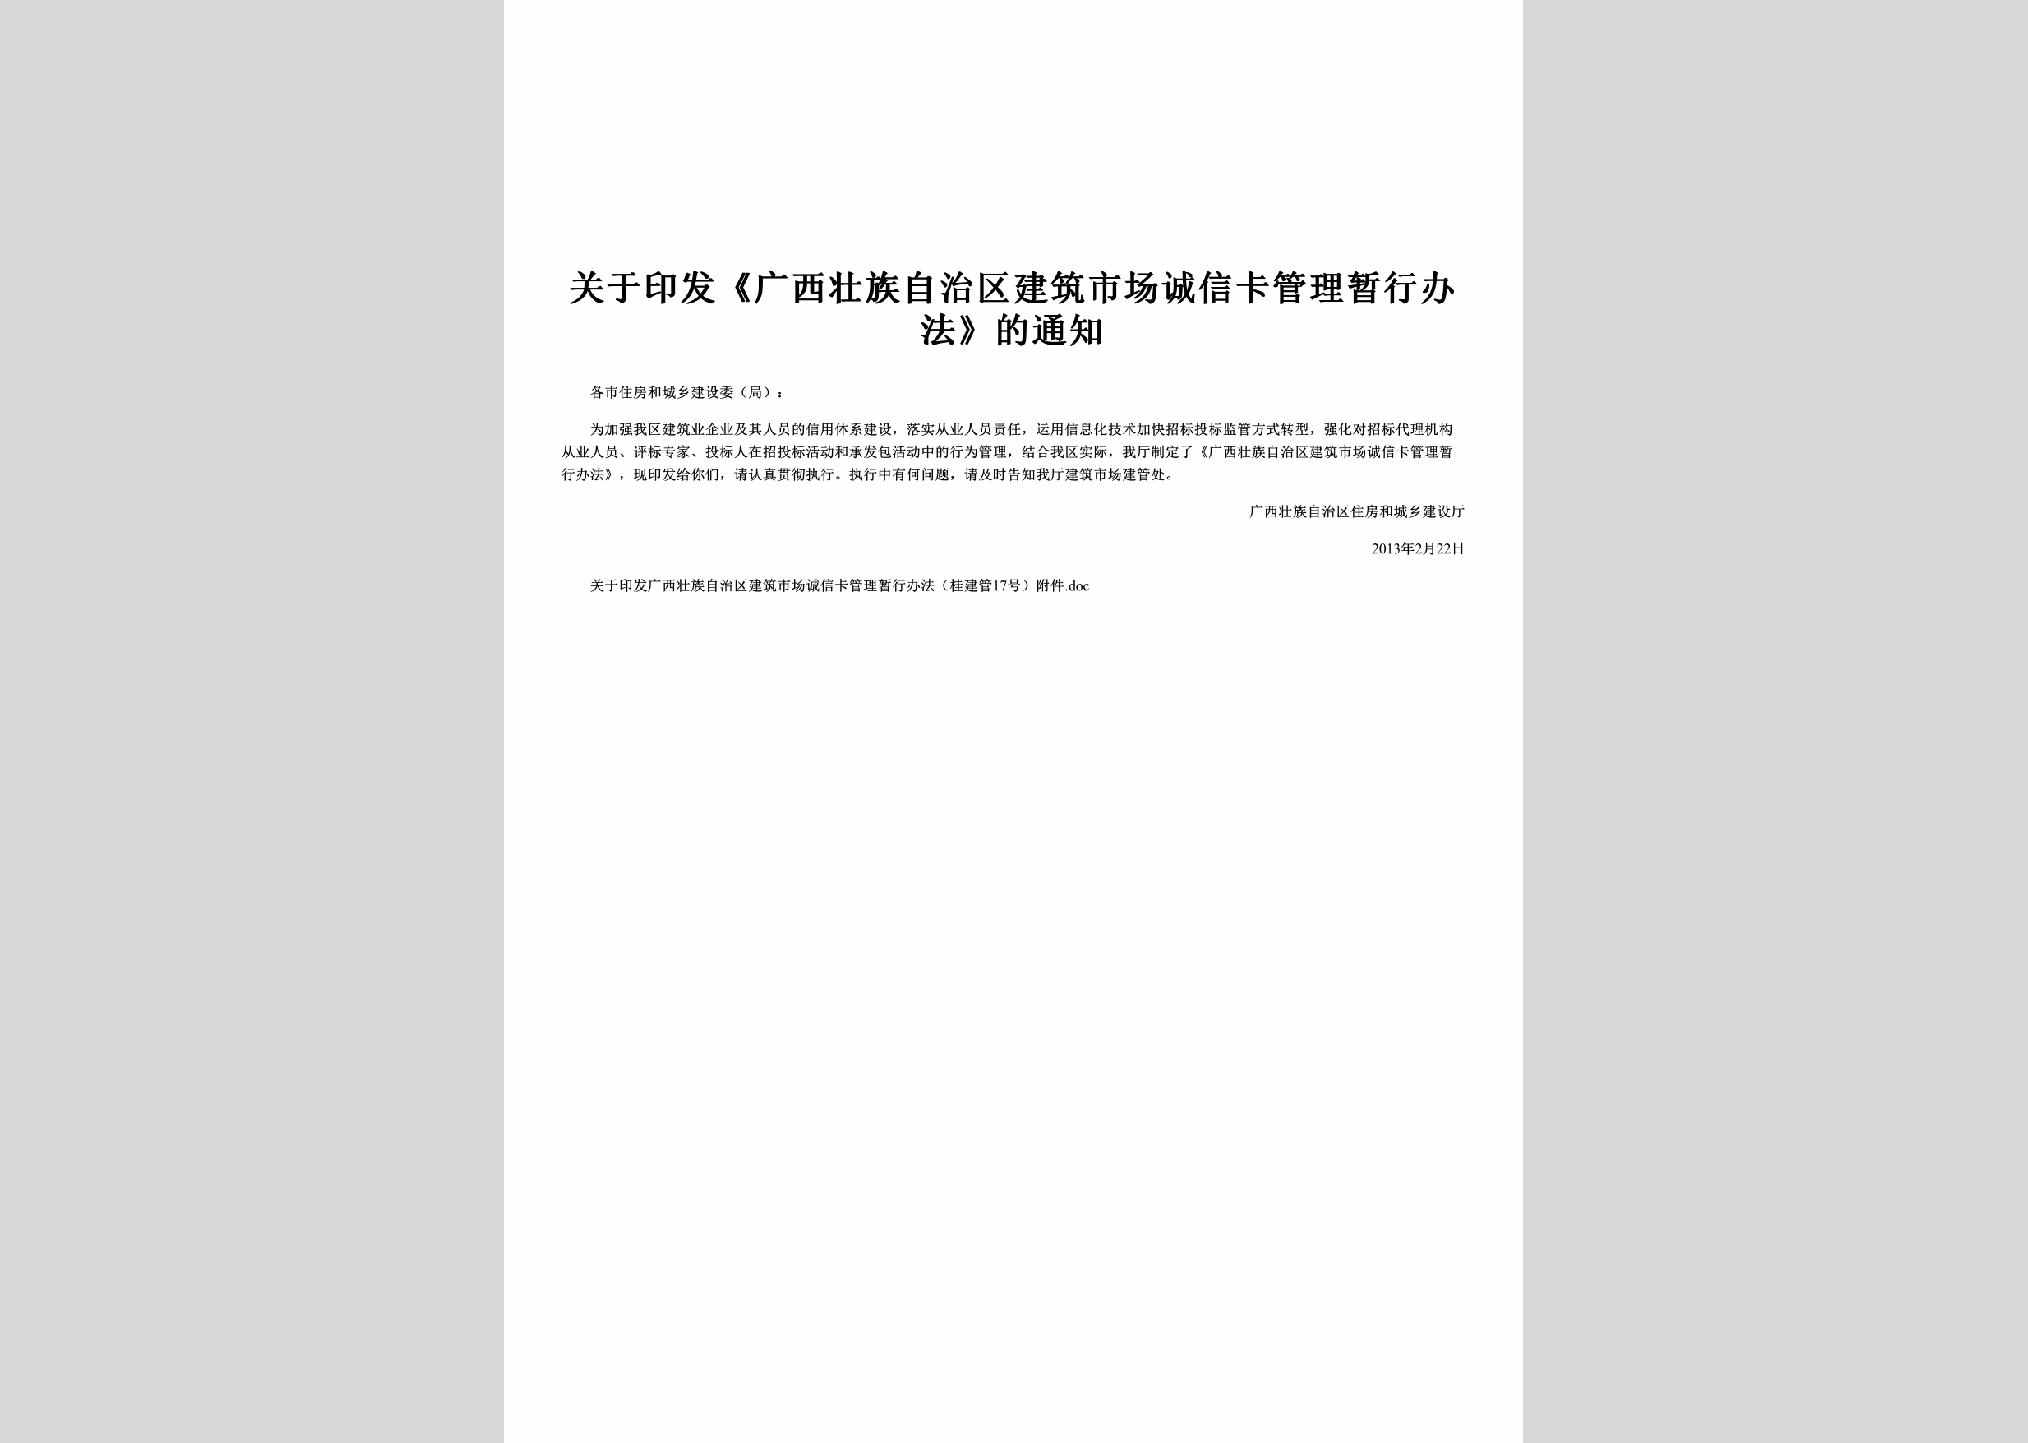 桂建管[2013]17号：关于印发《广西壮族自治区建筑市场诚信卡管理暂行办法》的通知